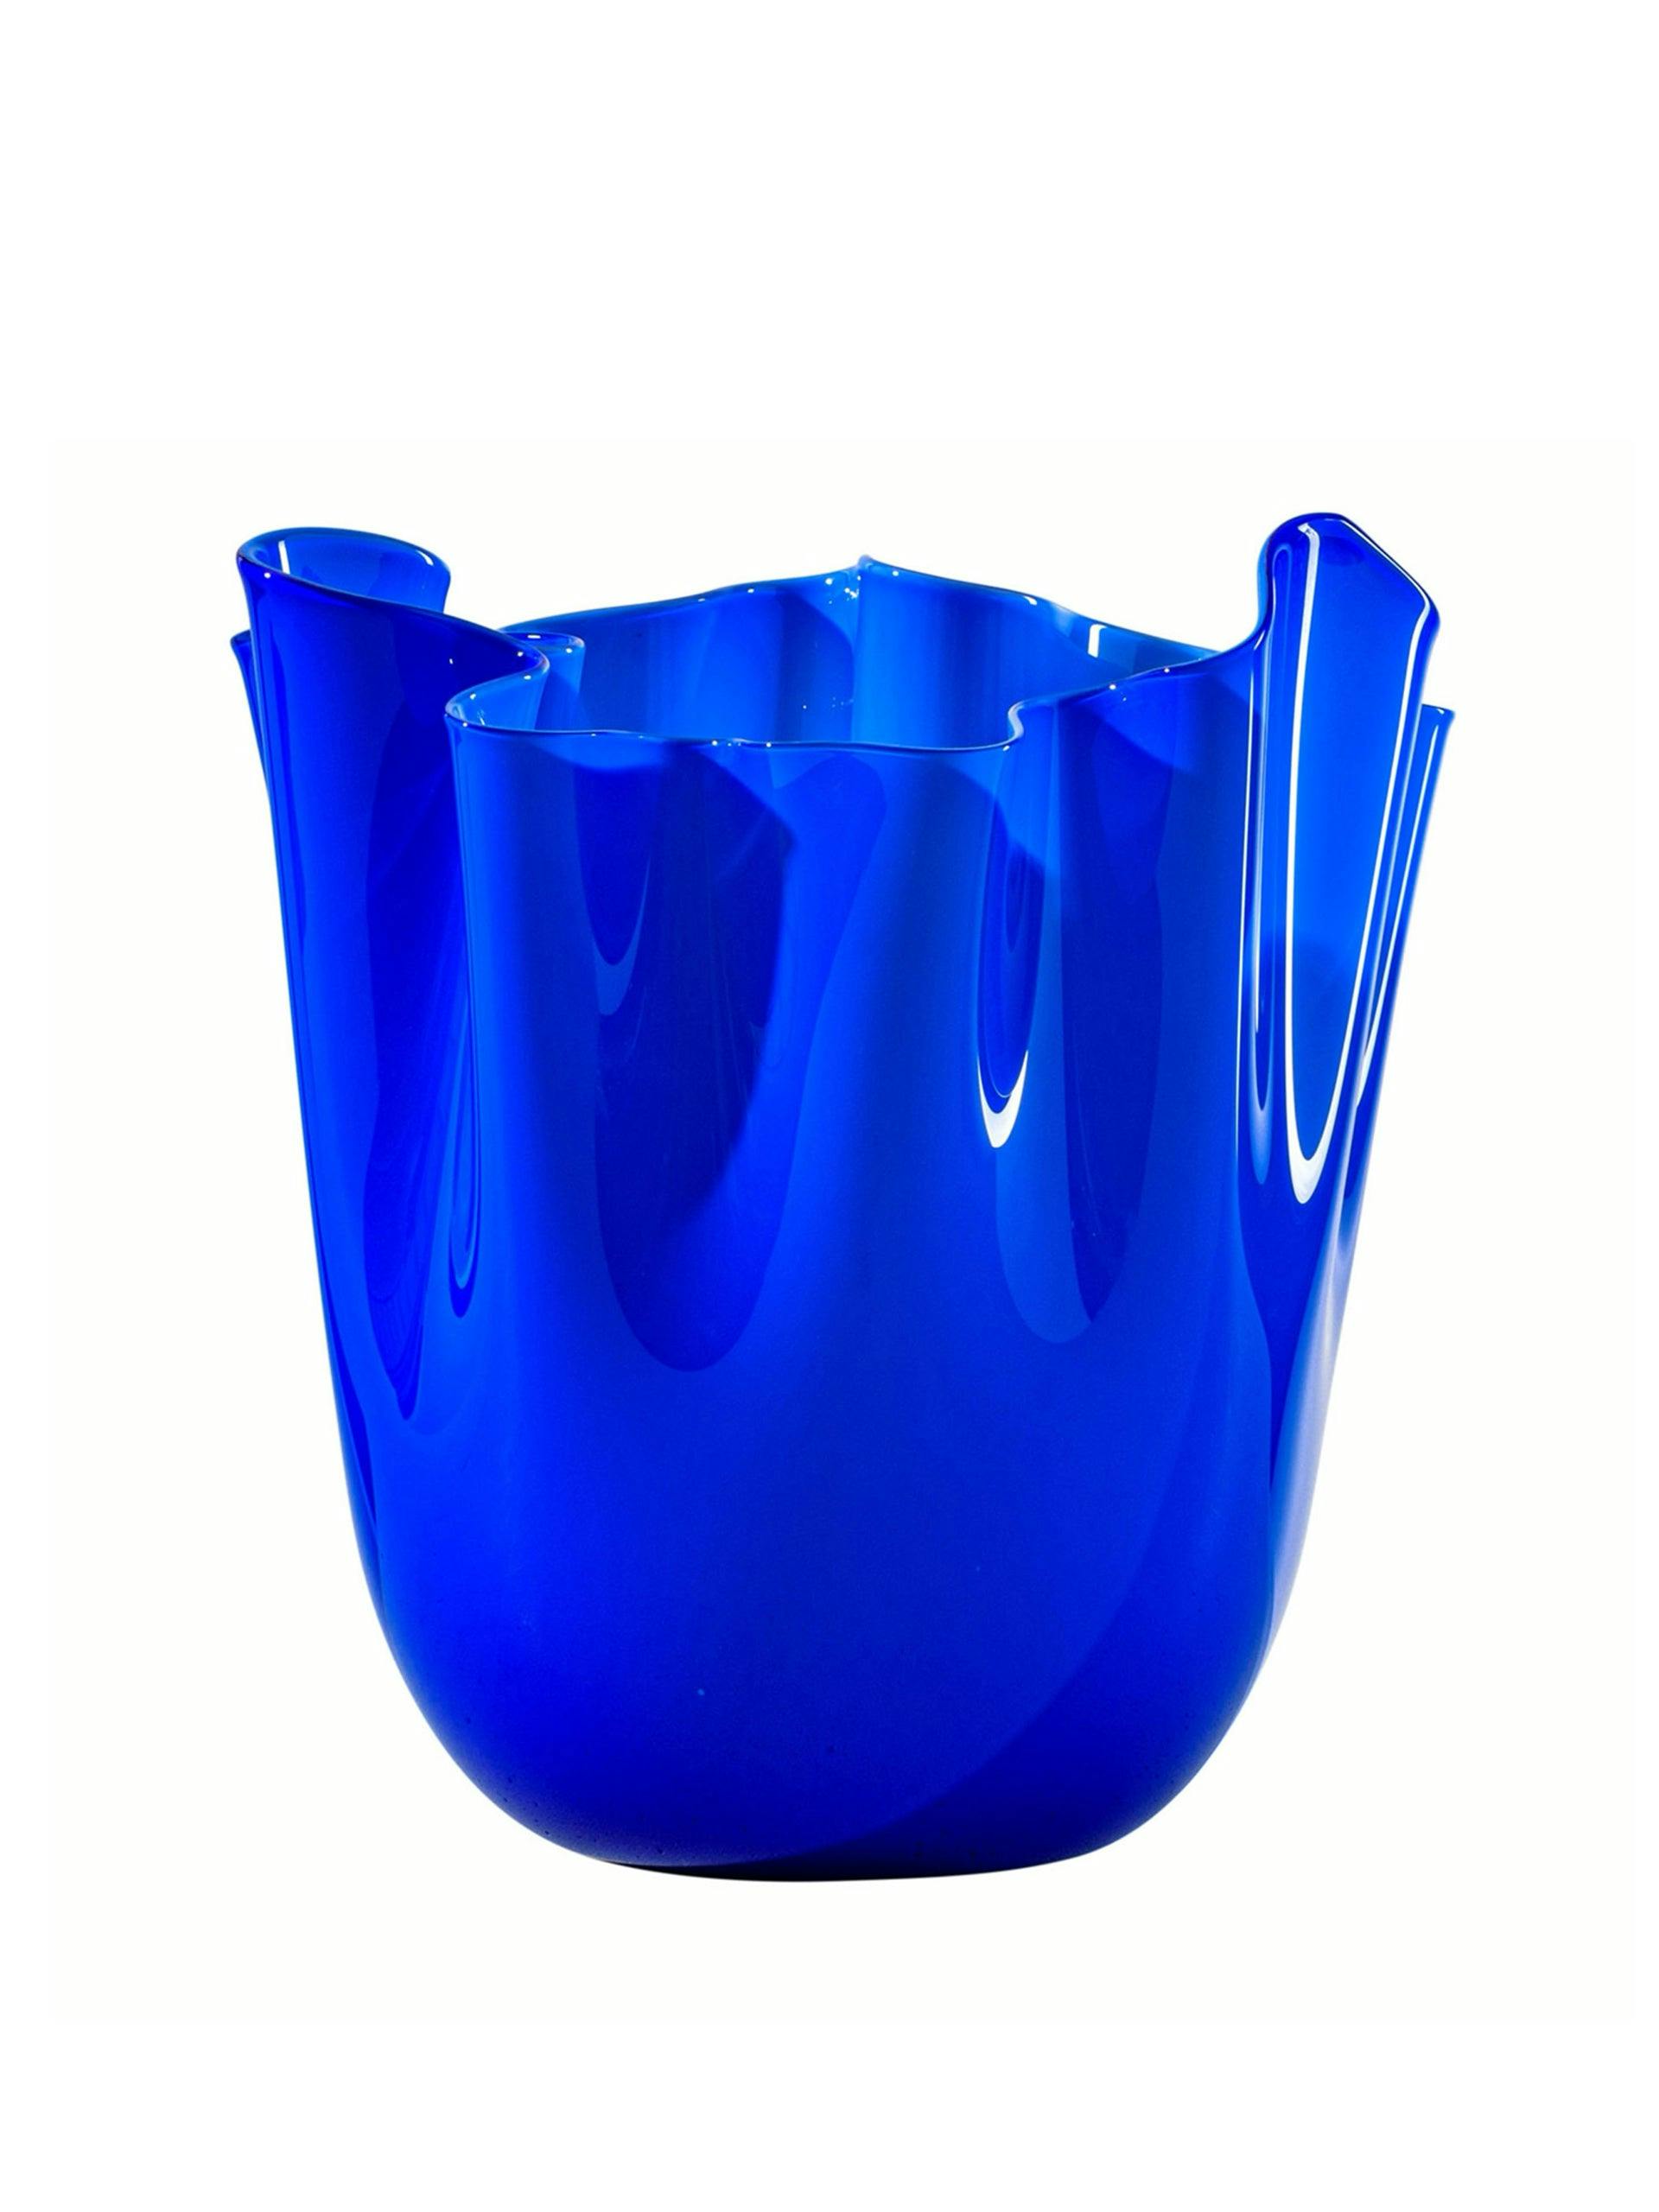 Fazzoletto sapphire glass vase